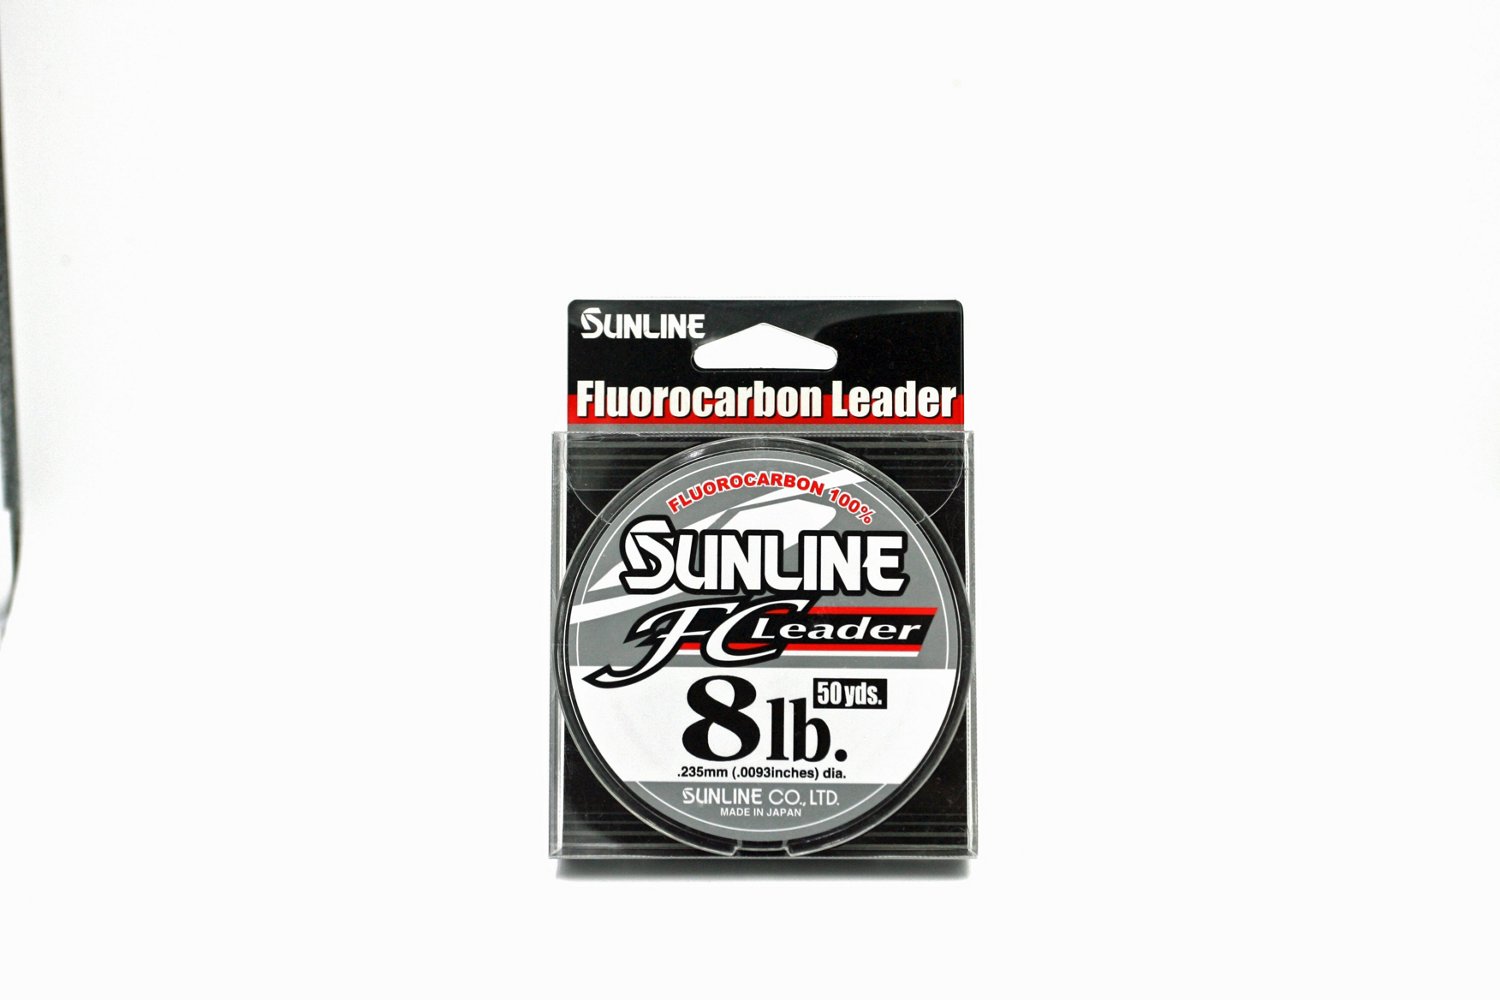 Sunline FC Leader 20 lb - 50 yd Fluorocarbon Fishing Line